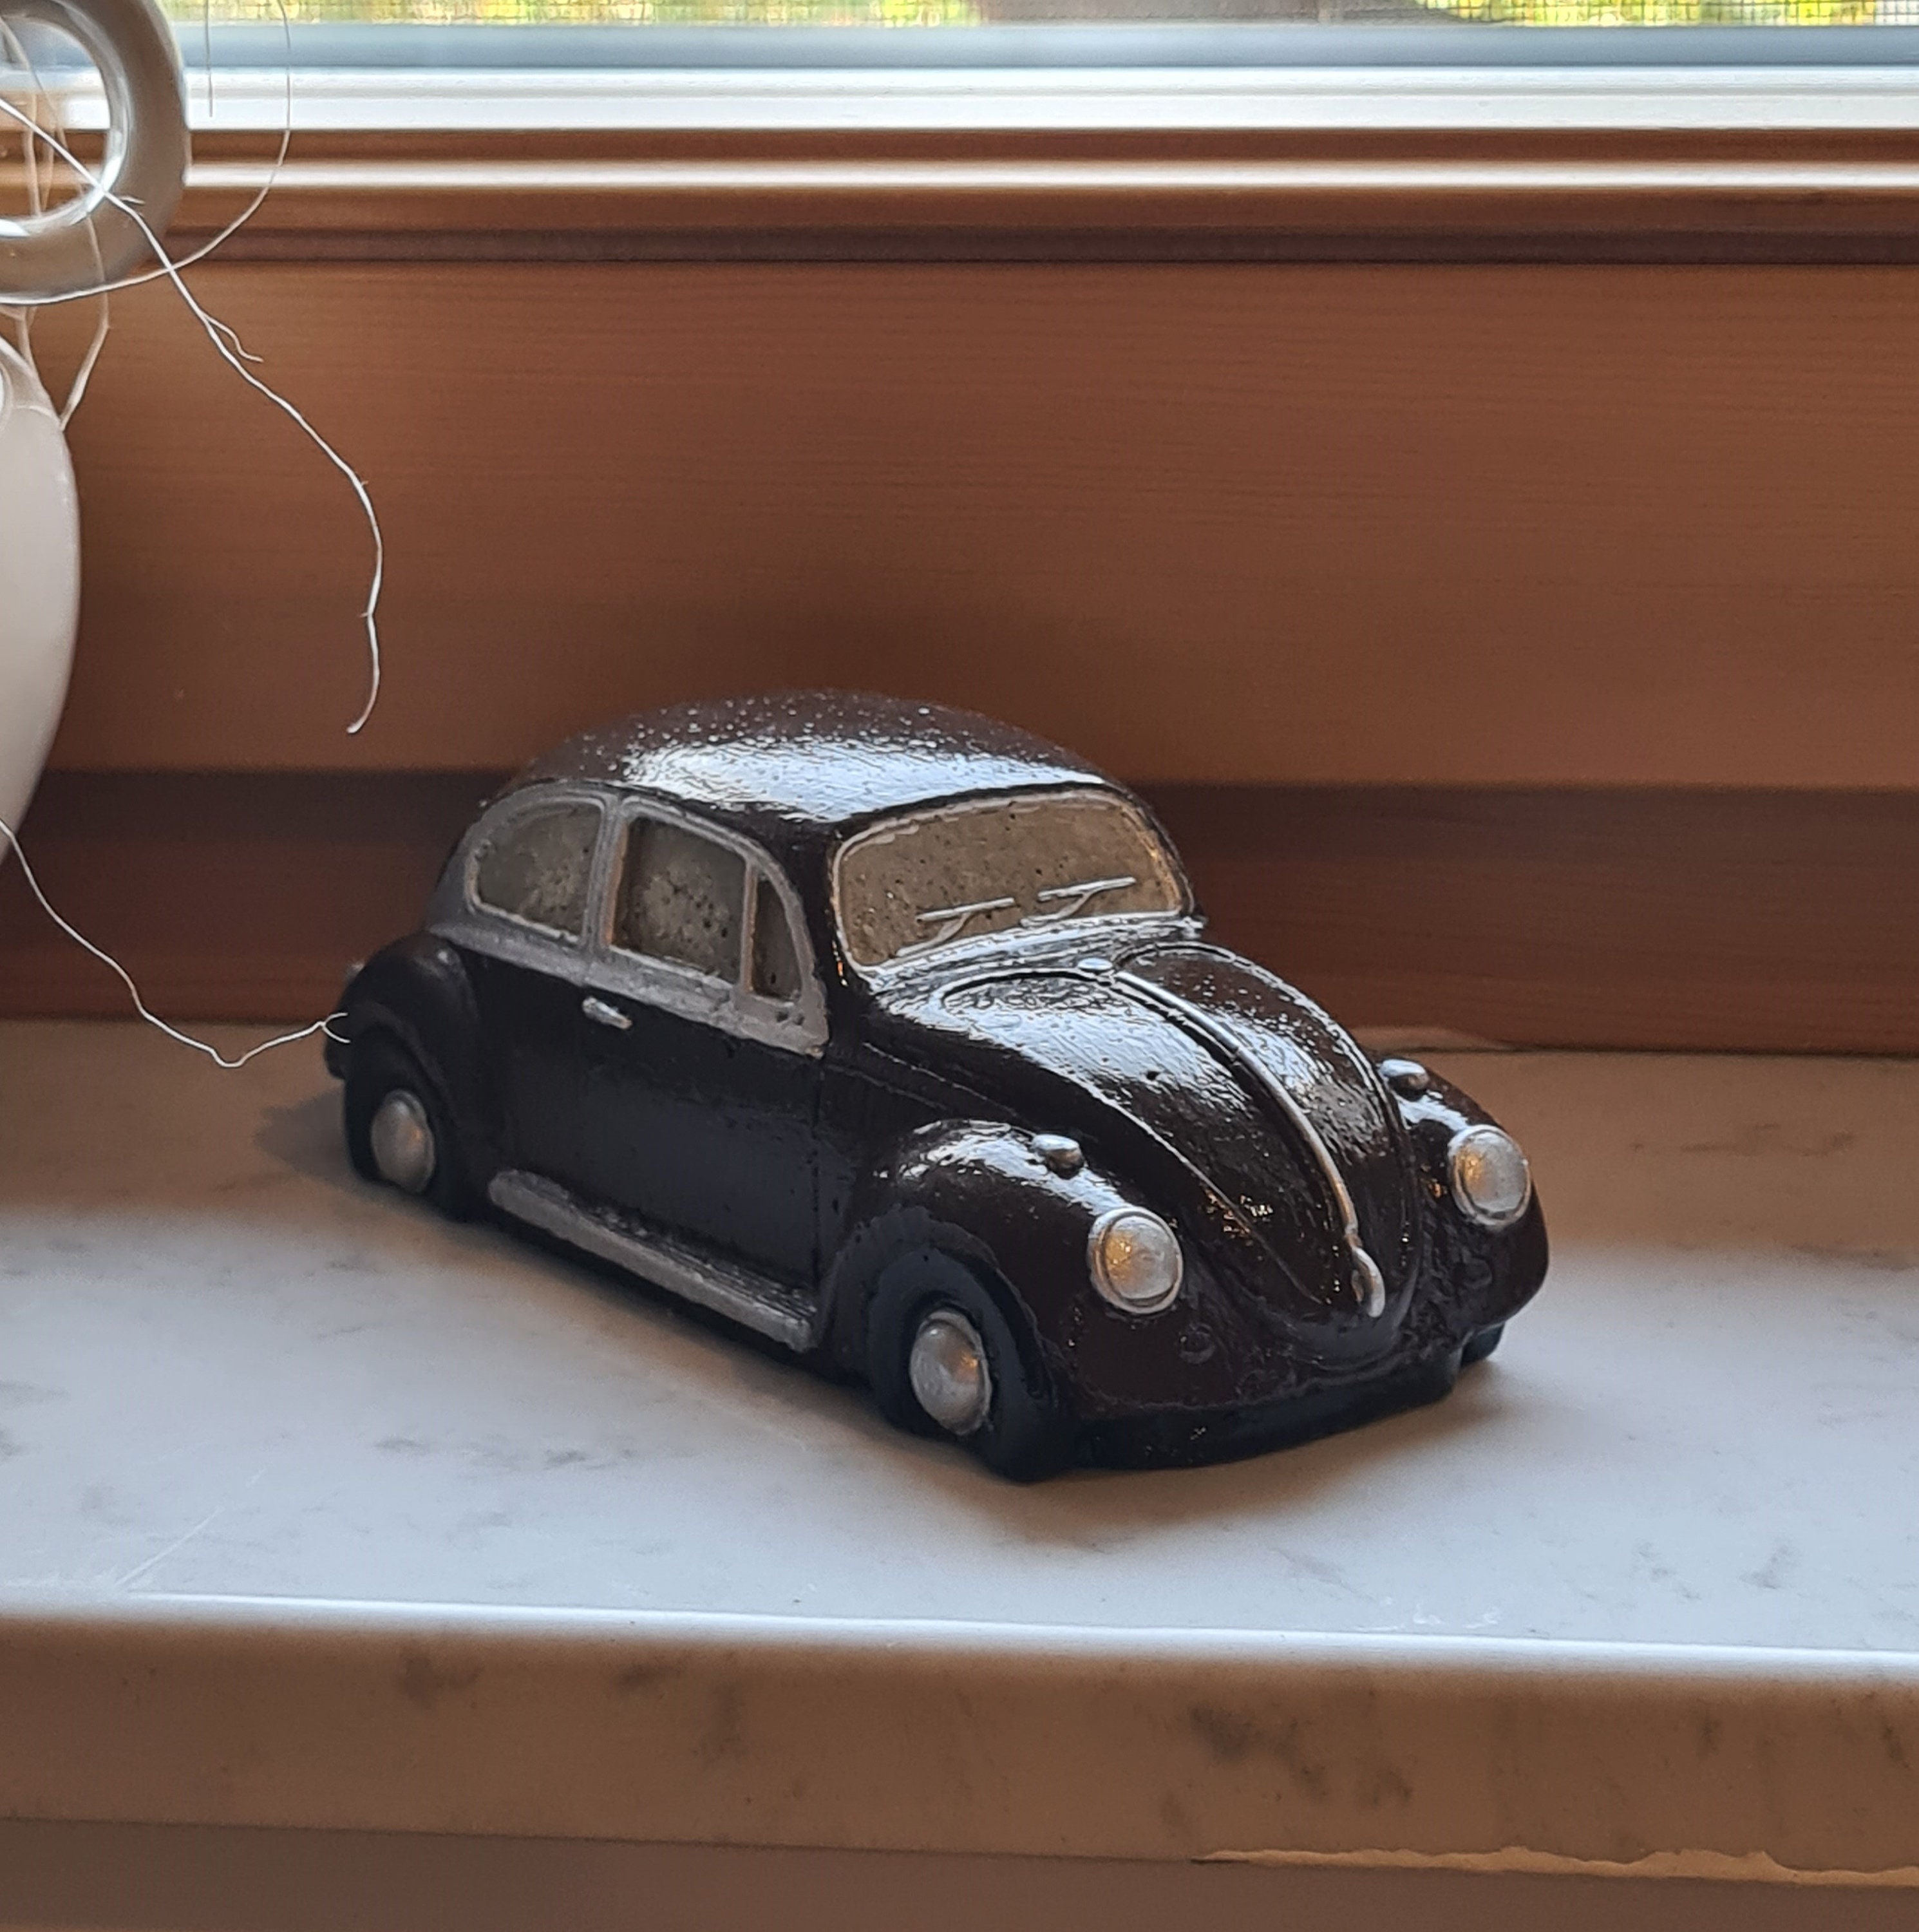 Individuelle Lampe VW Käfer als Motiv mit Geschenkidee